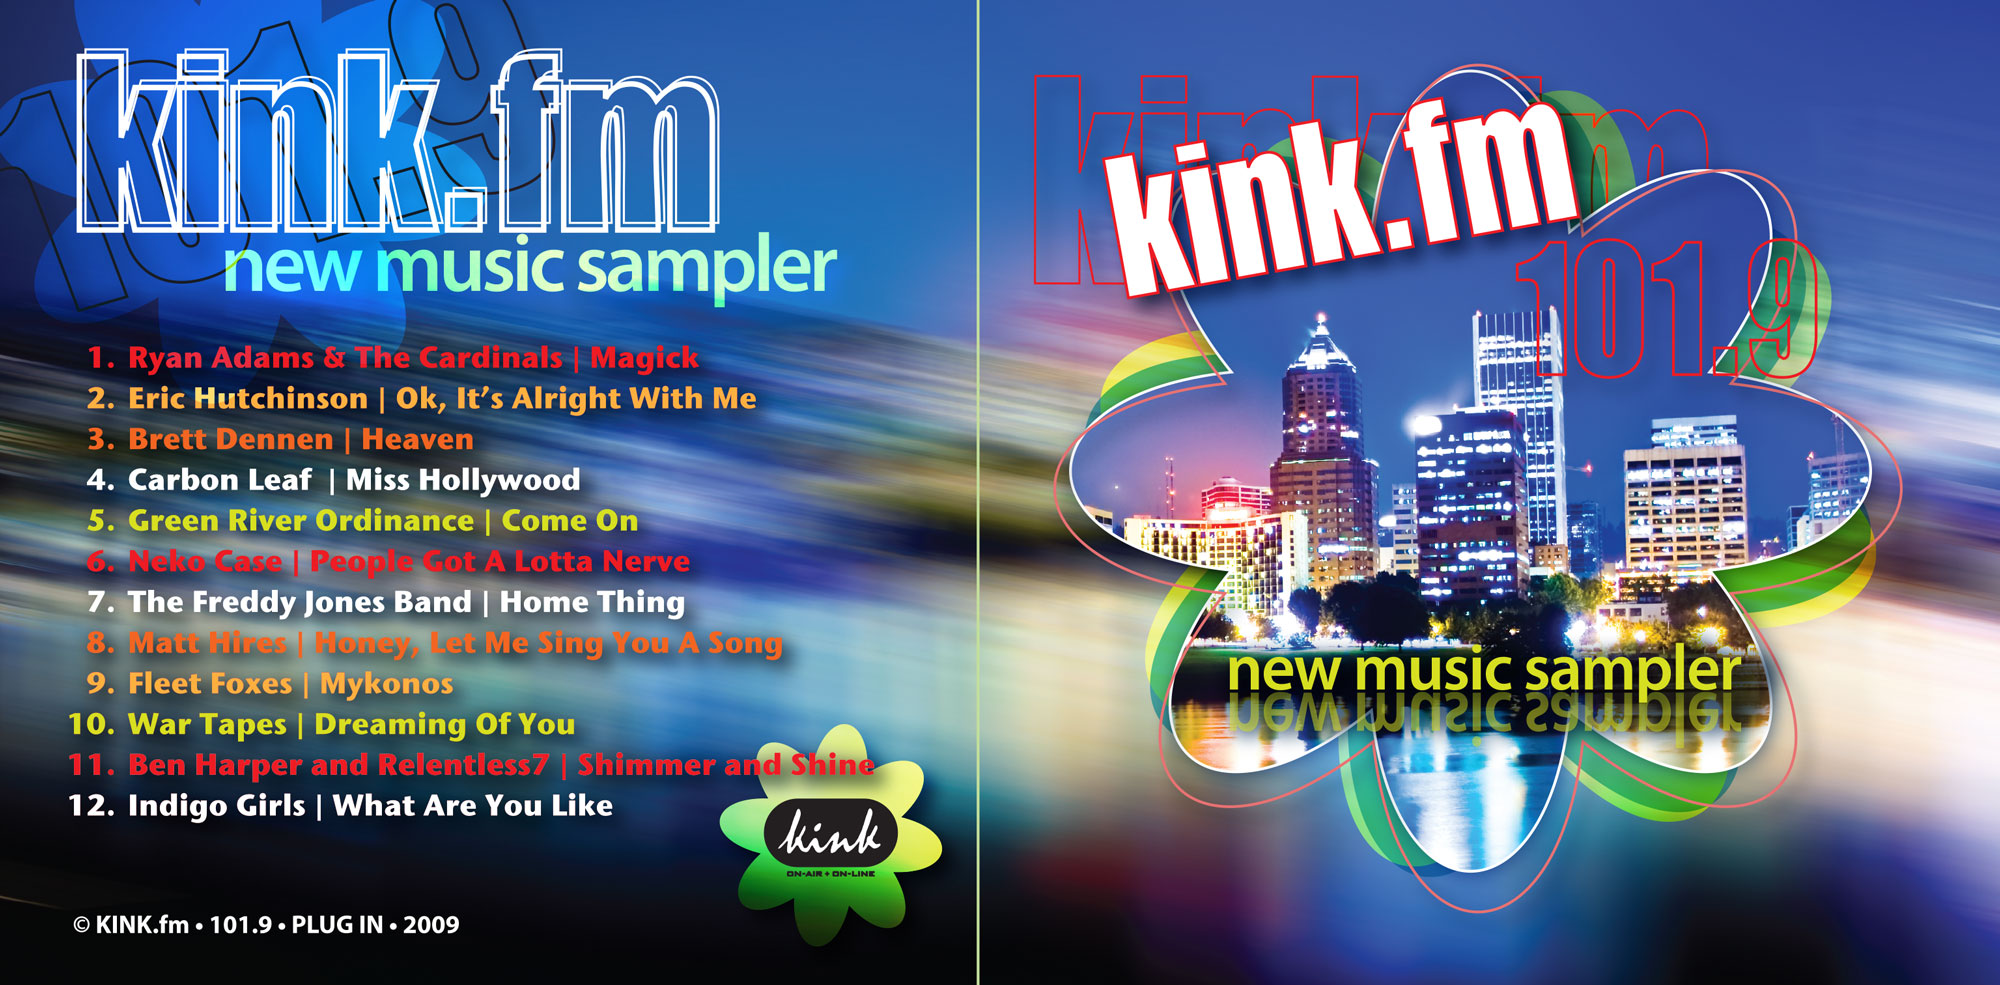 kink.fm new music cd sampler